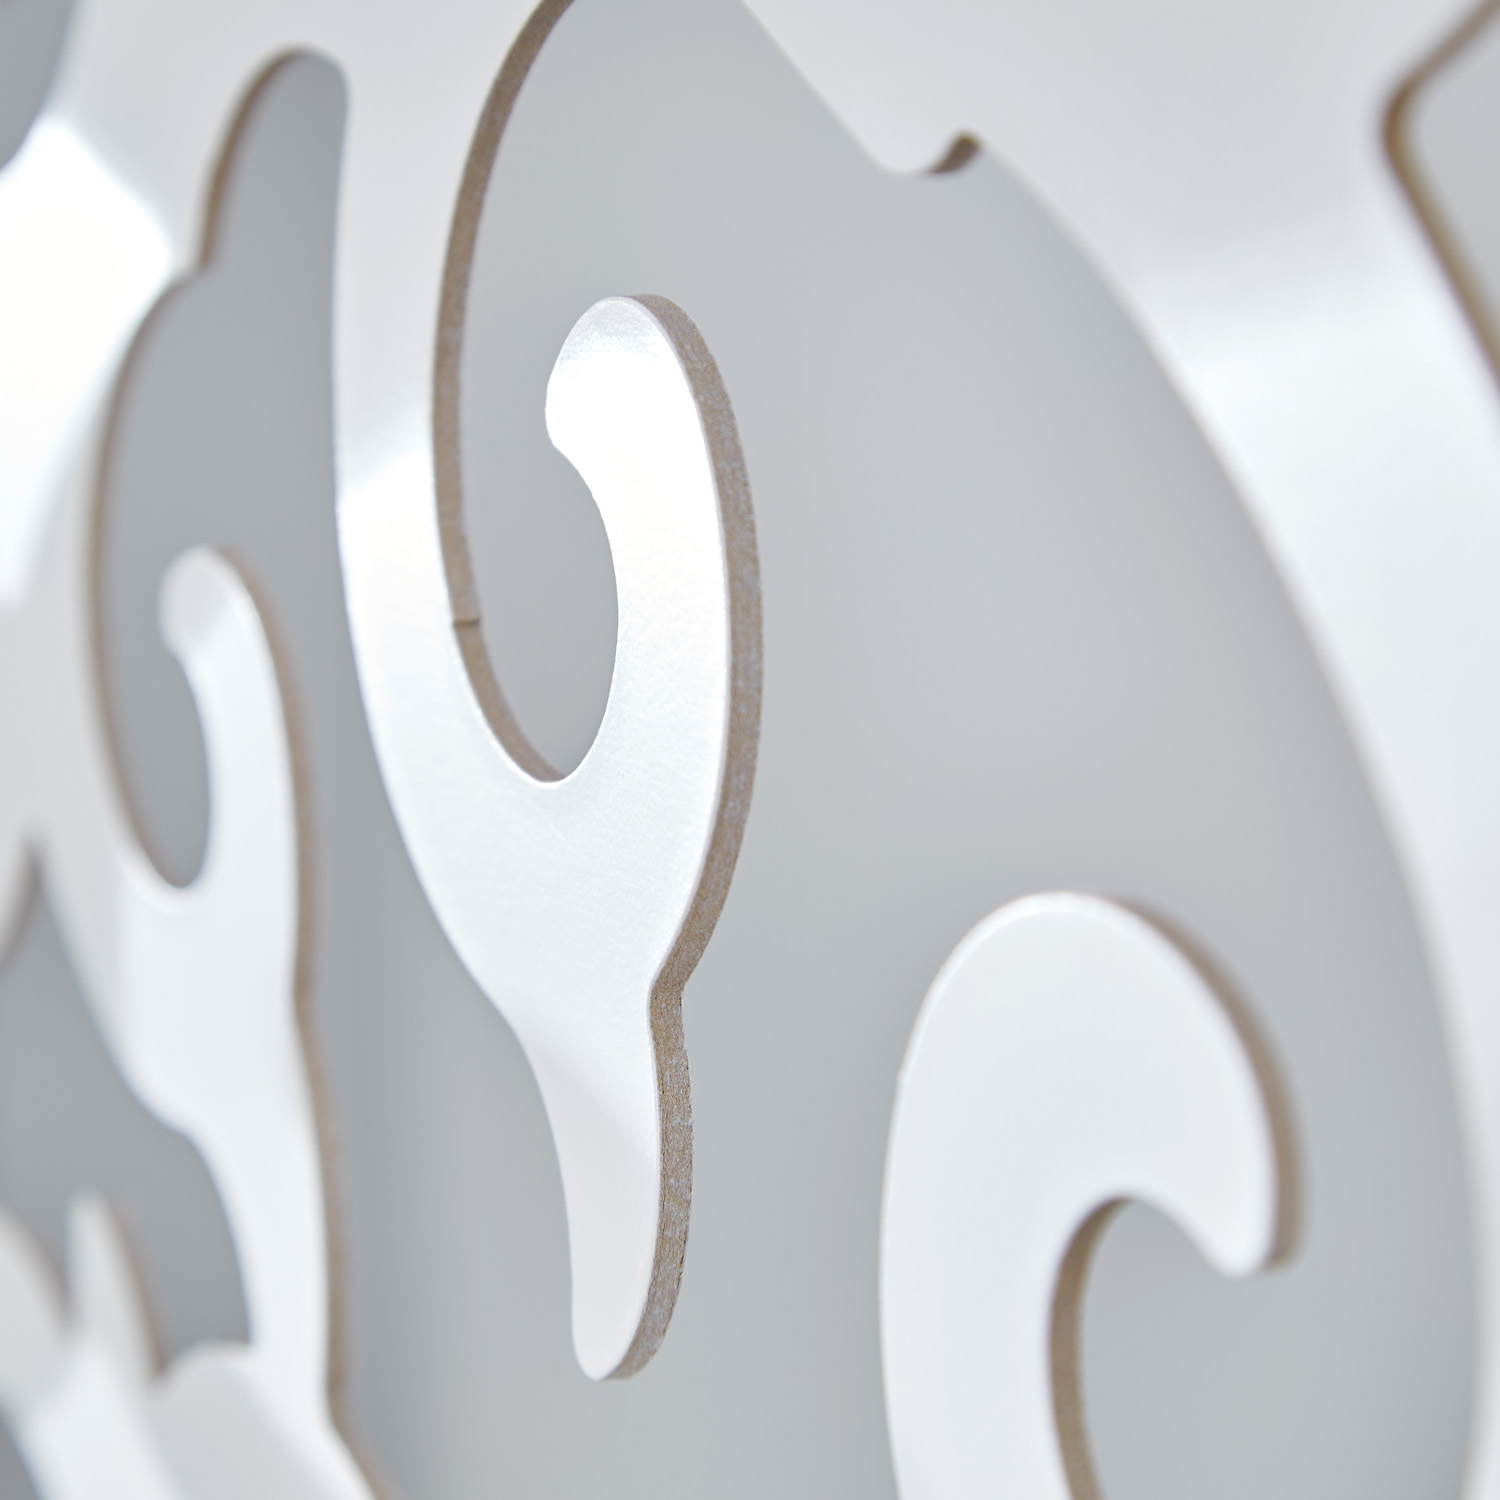 Paravent Raumteiler 4 teilig Trennwand Shoji Faltbar  spanische Wand Sichtschutz Holz Weiß